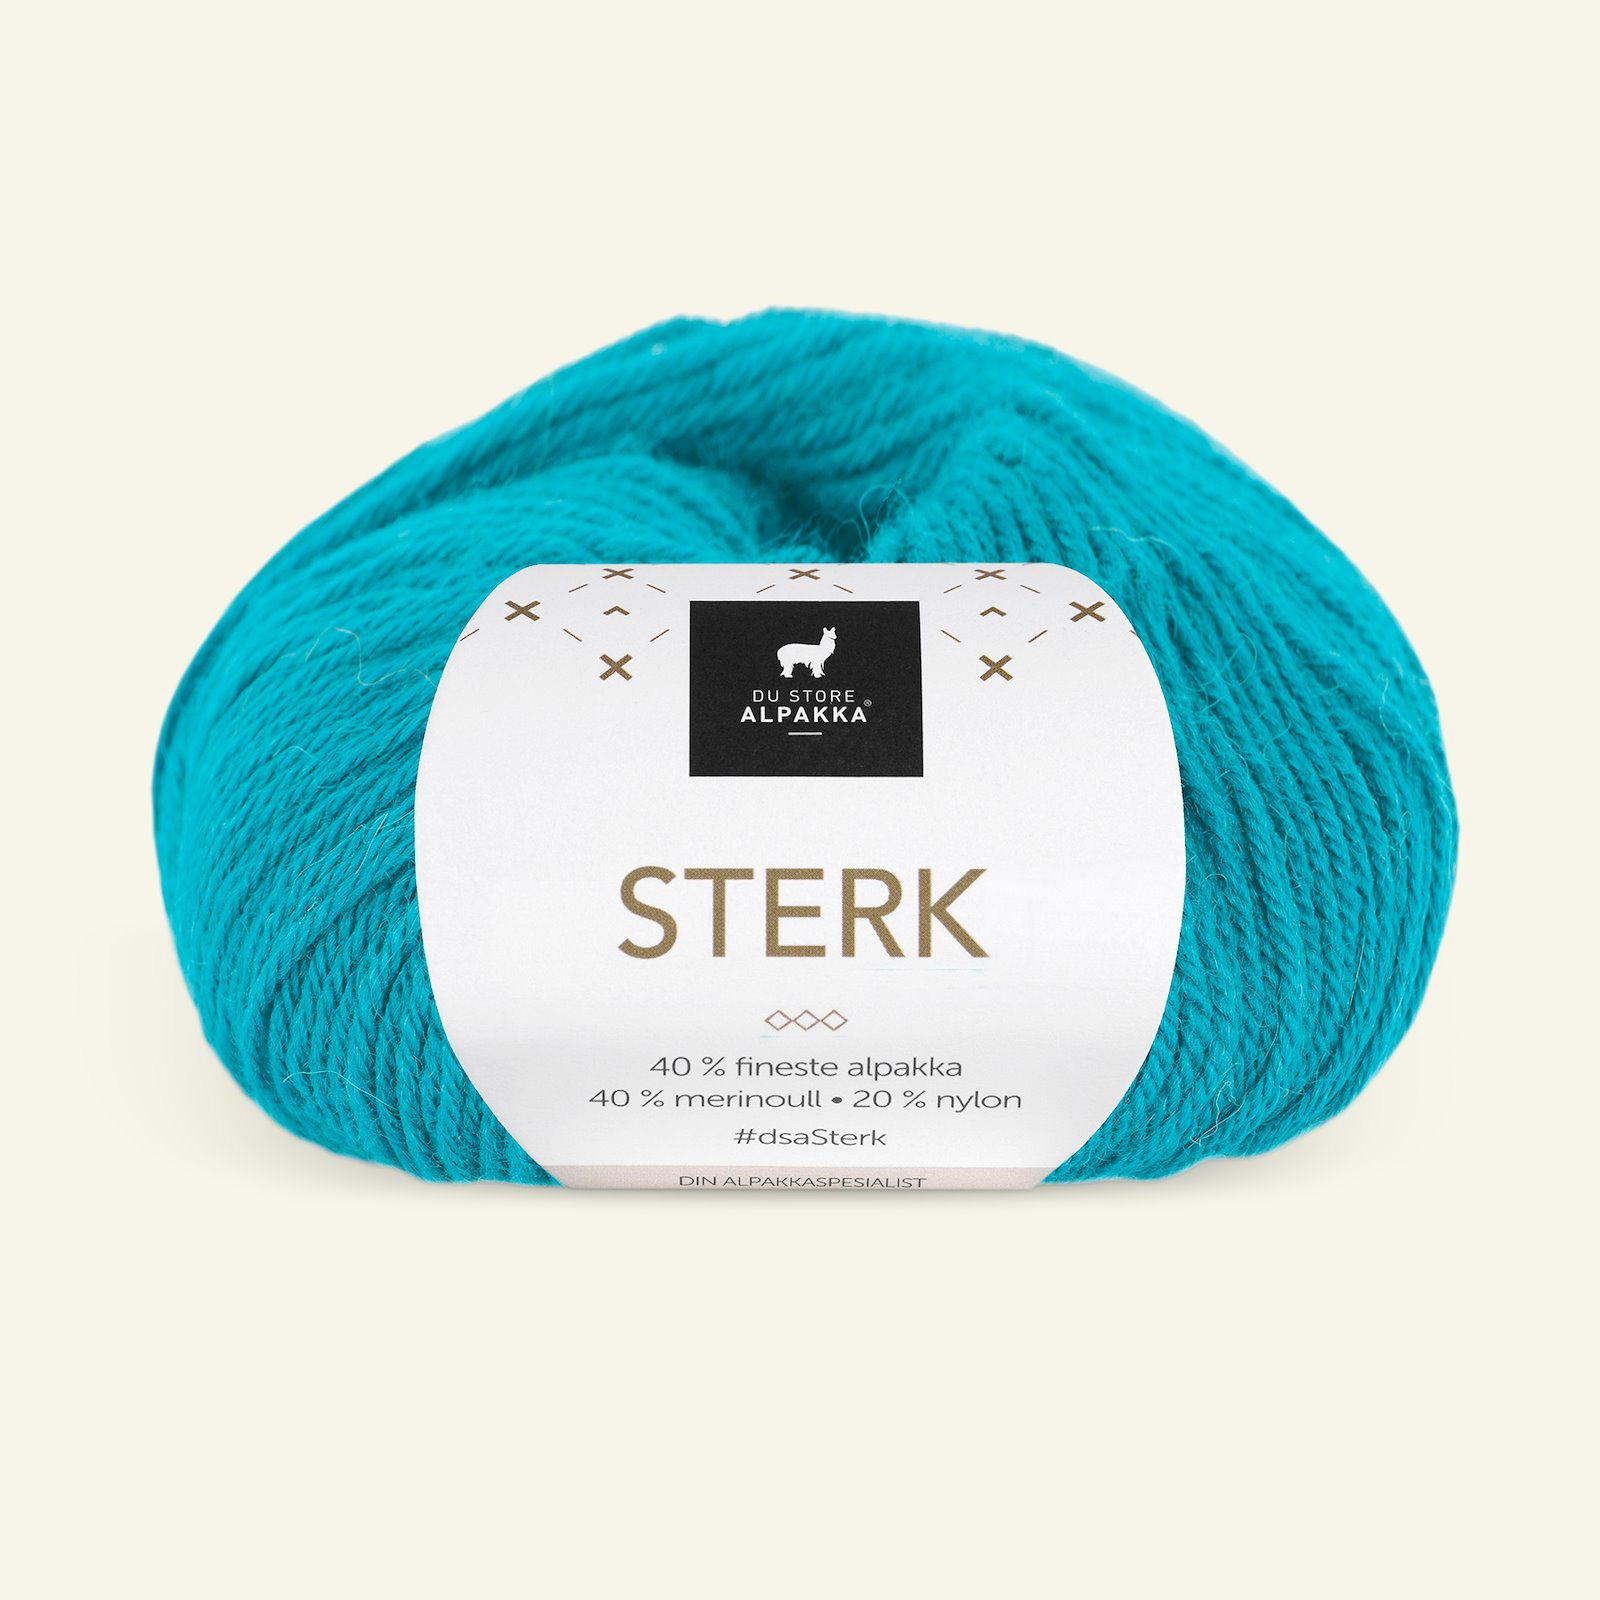 Du Store Alpakka, alpaca merino mixed yarn "Sterk", turquise (905) 90000697_pack